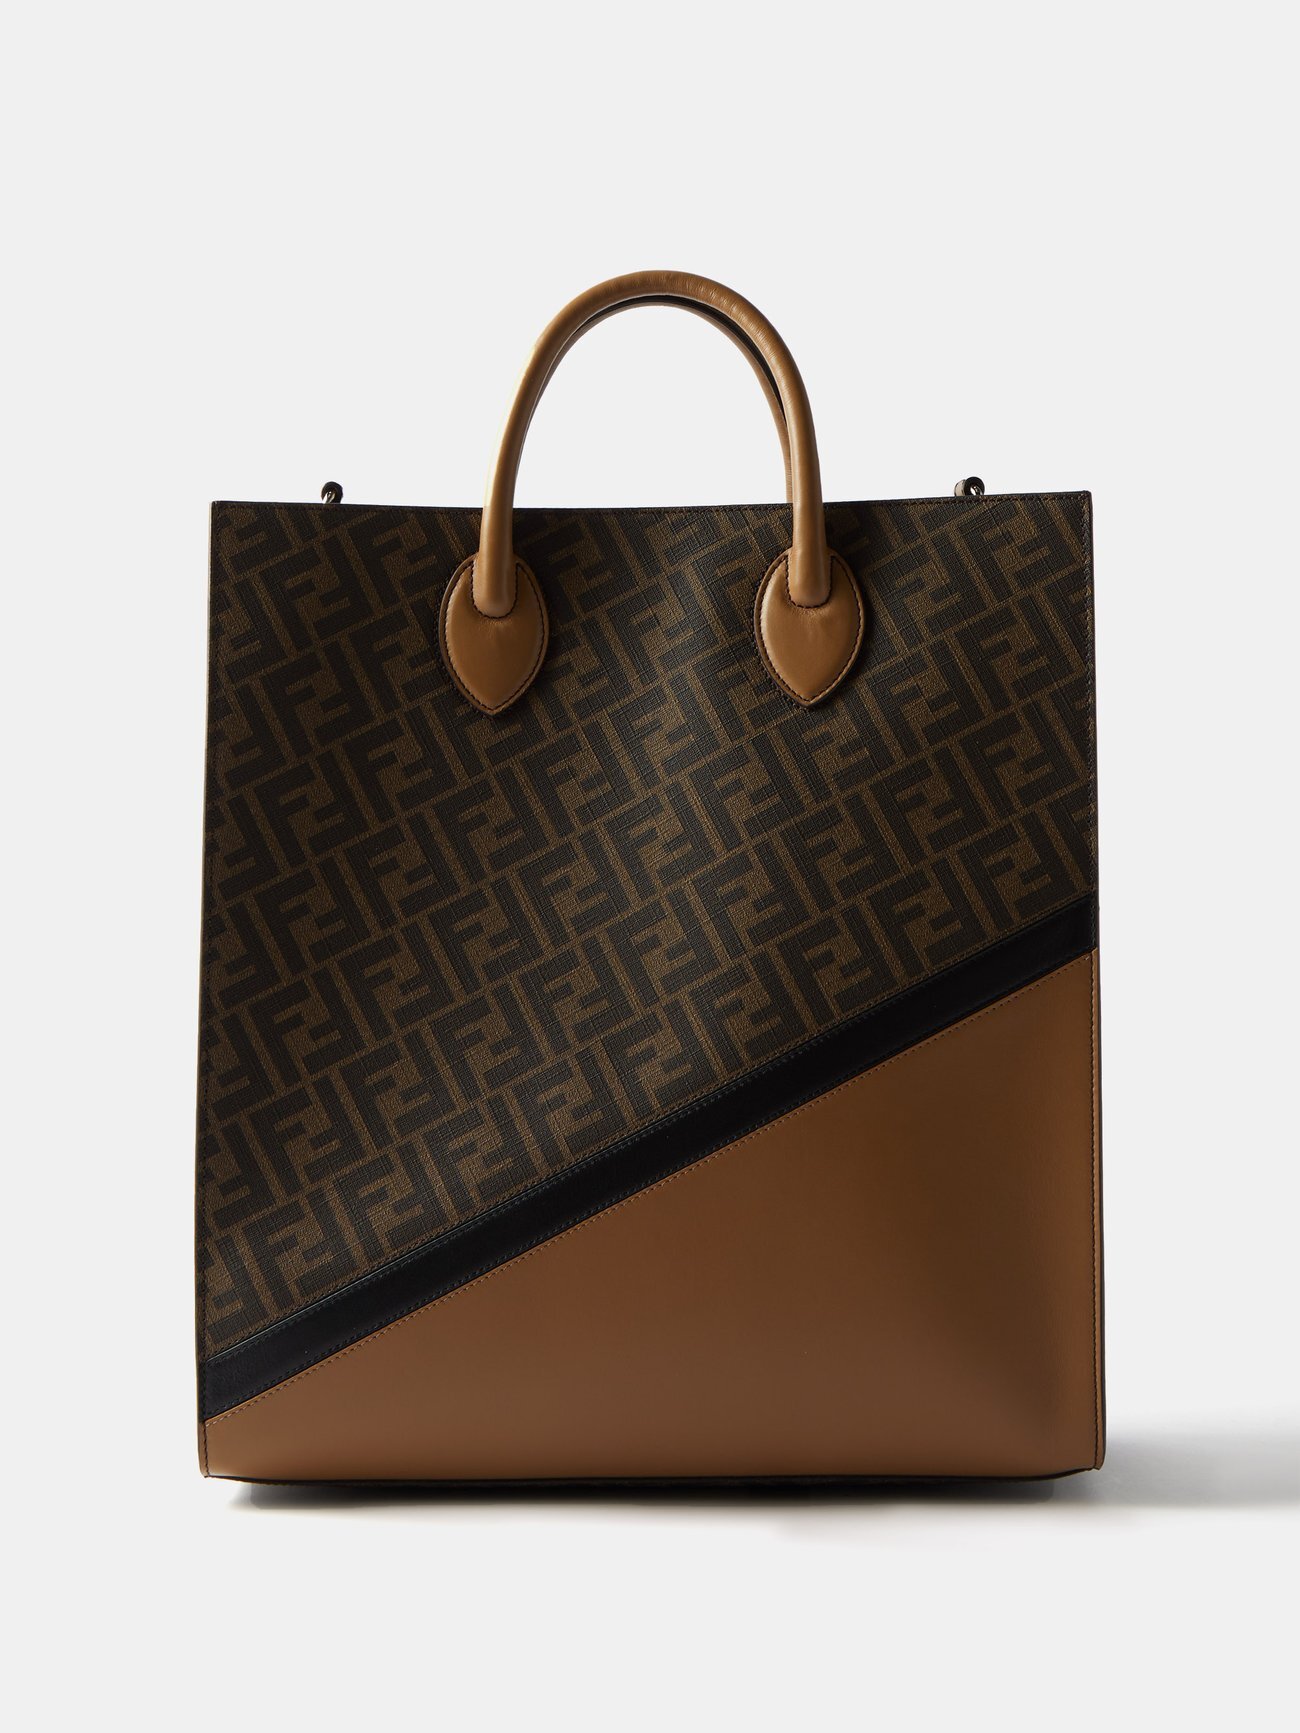 Fendi - Ff-print Leather Tote Bag - Mens - Brown Multi